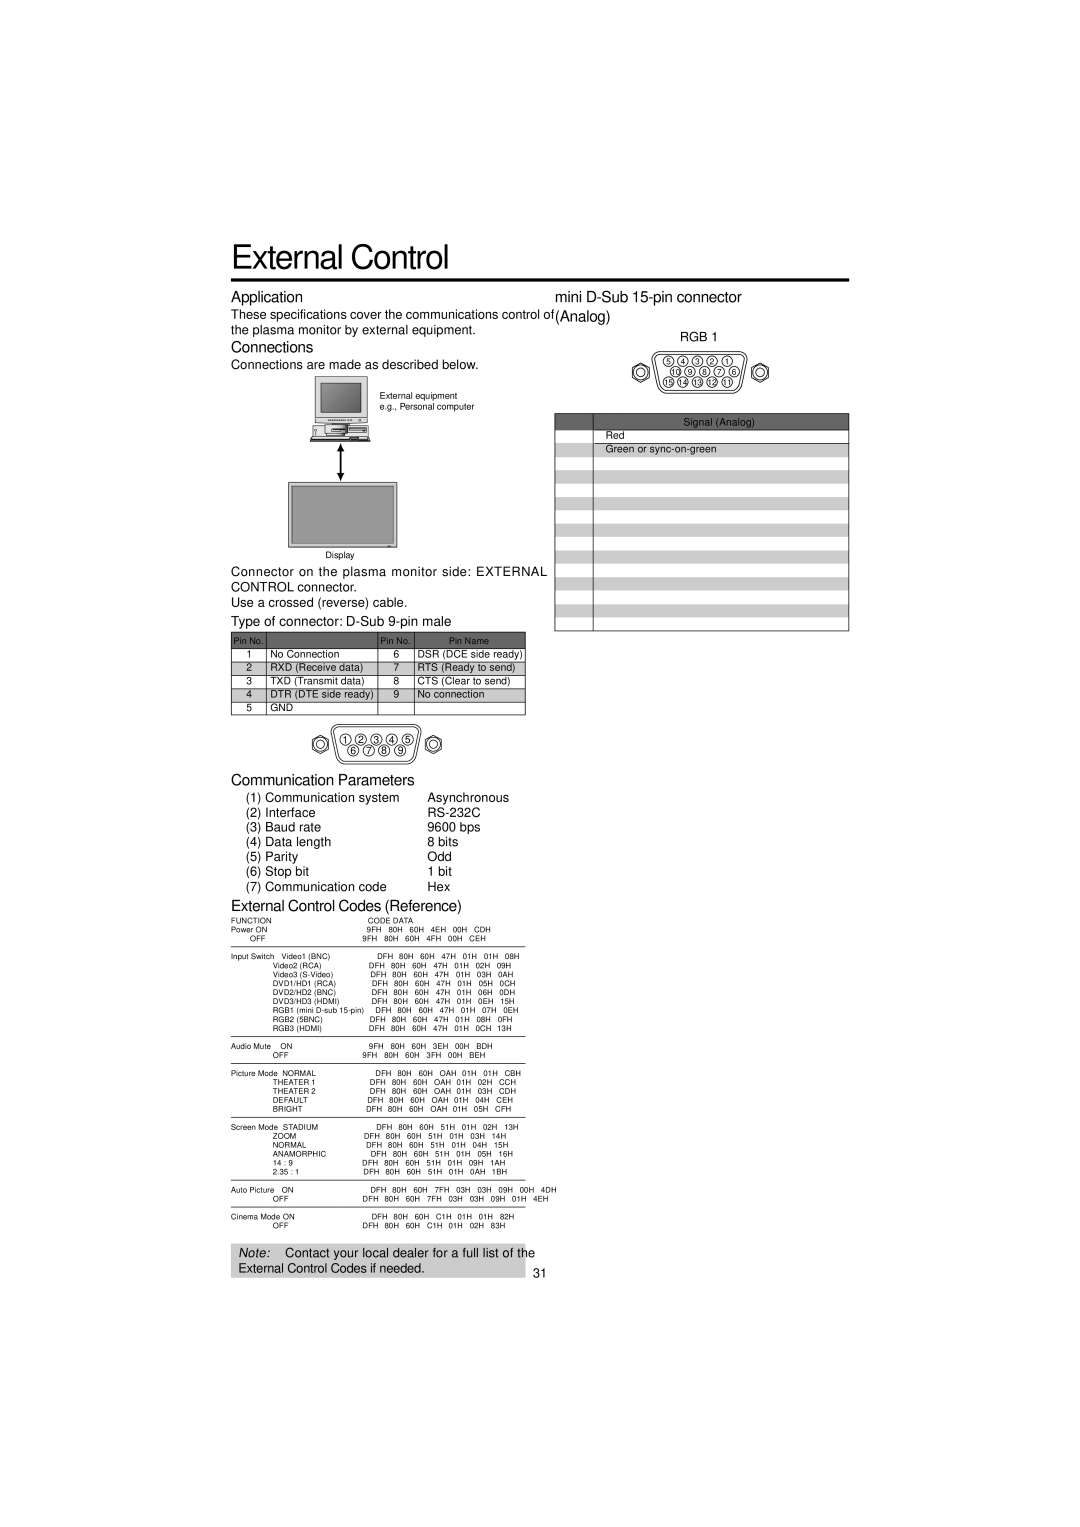 Marantz PD5050D manual External Control, Pin Assignments 